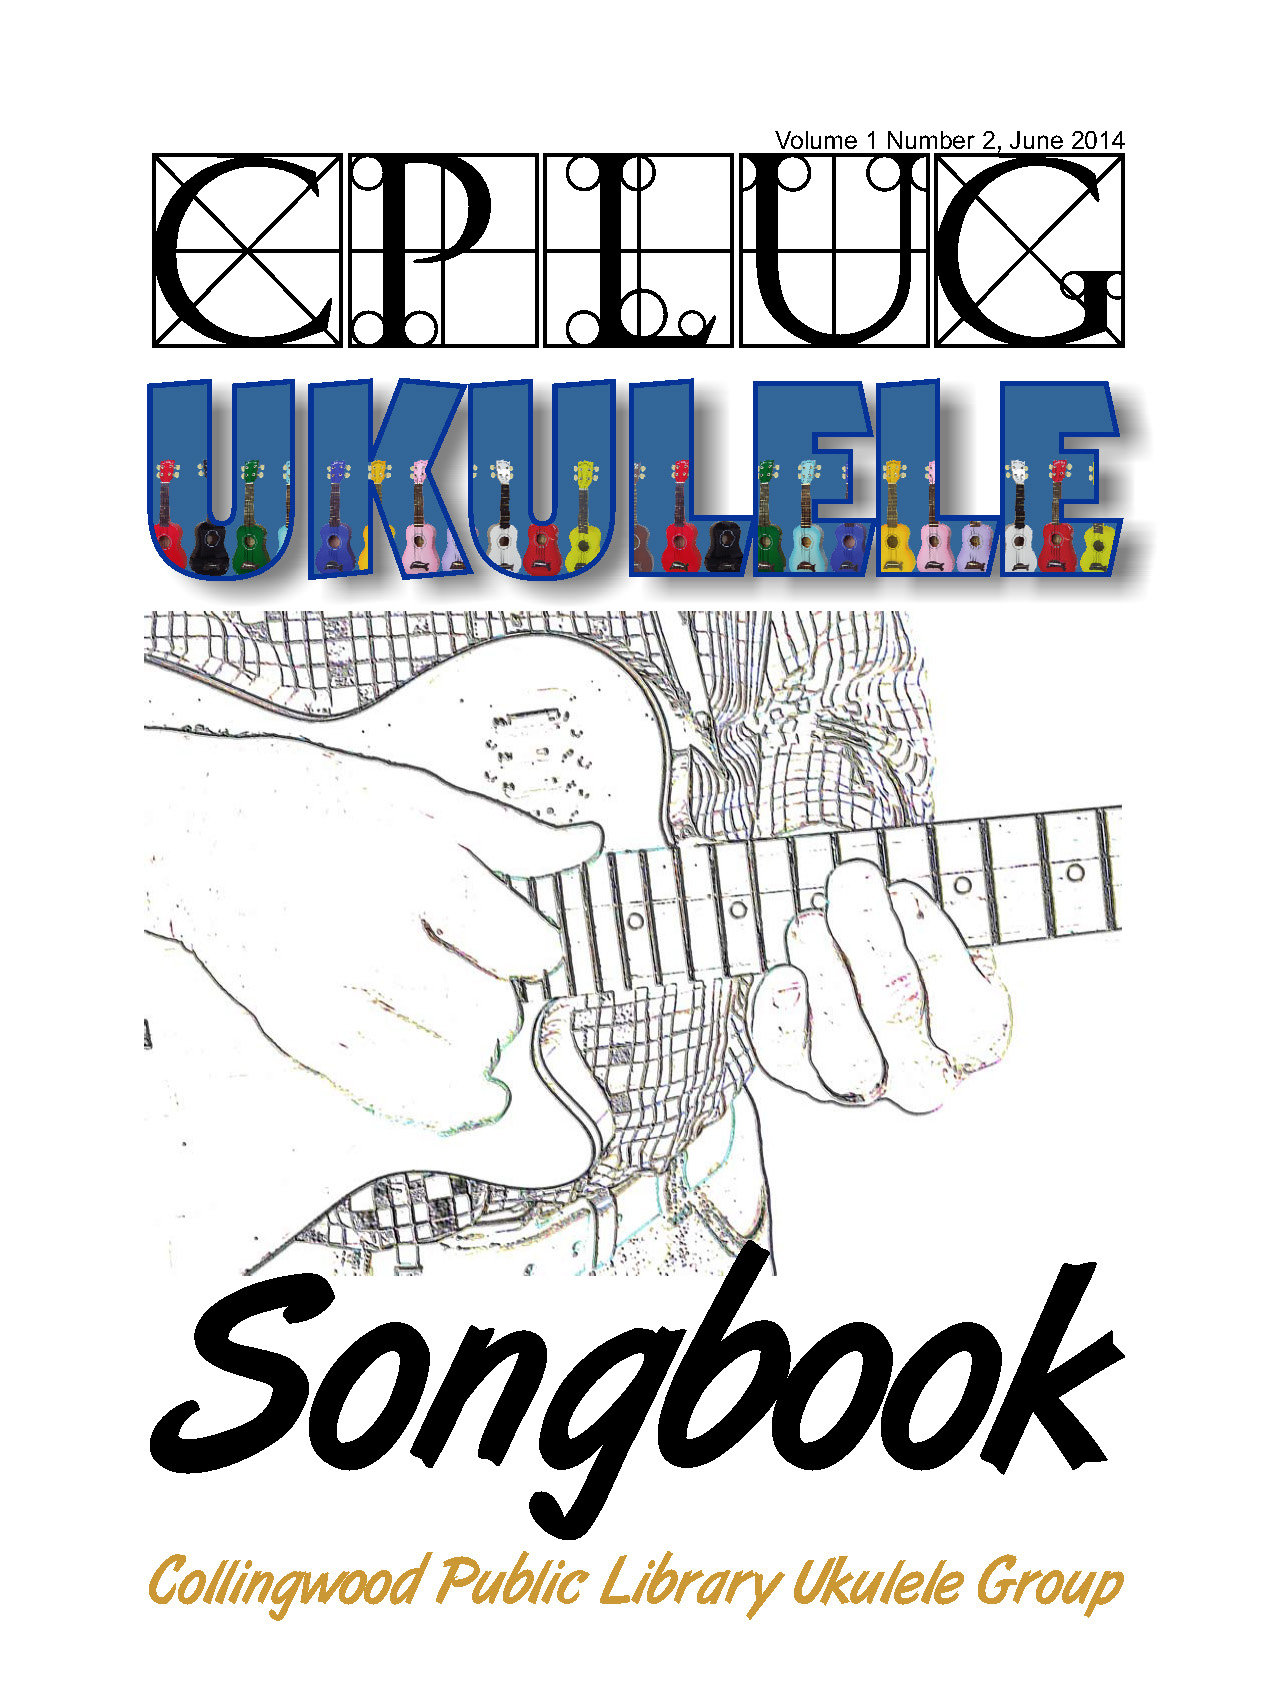 CPLUG songbook